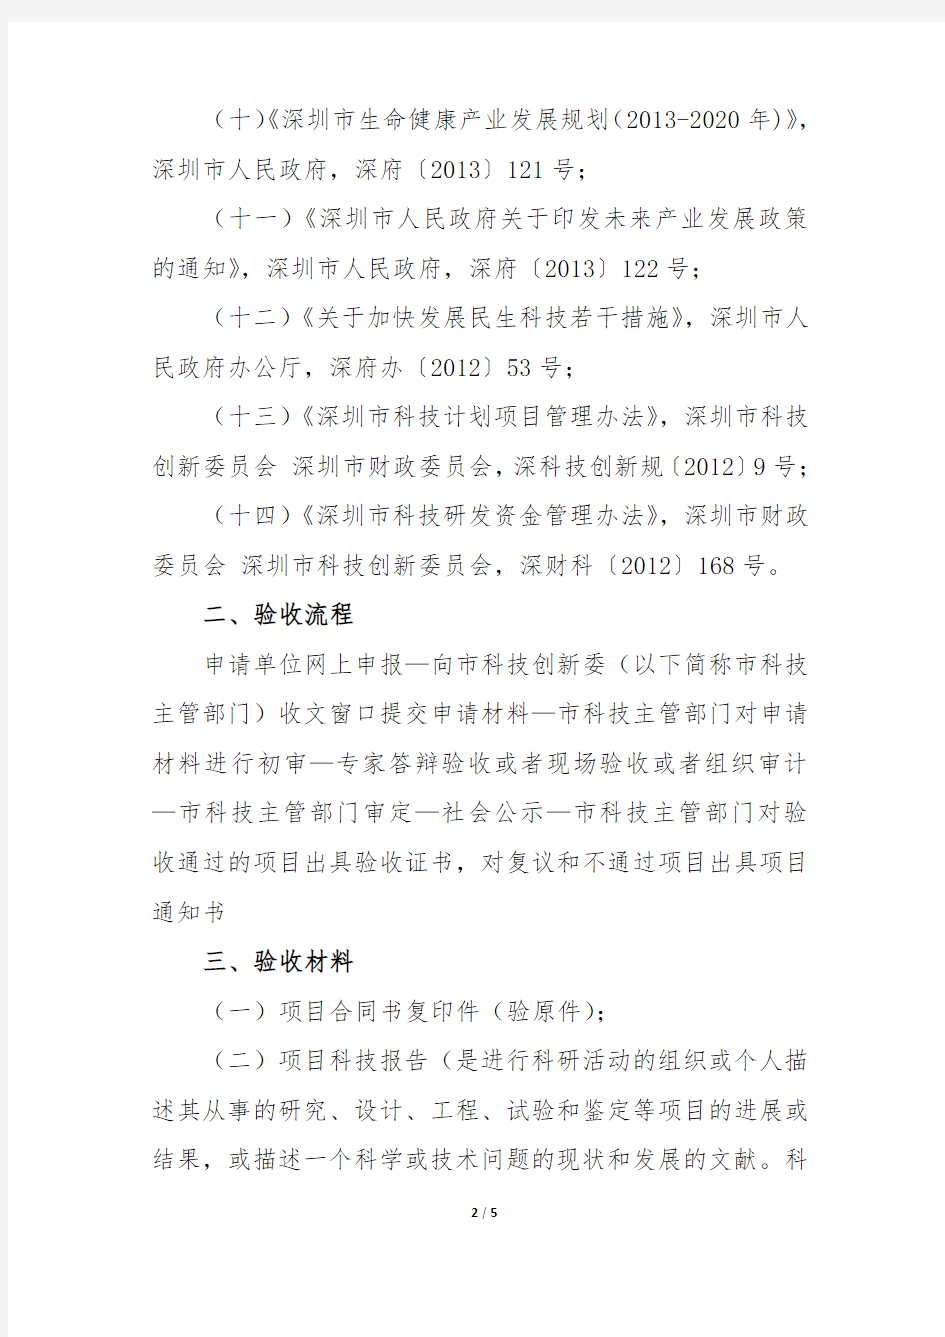 深圳市科技计划项目验收操作流程